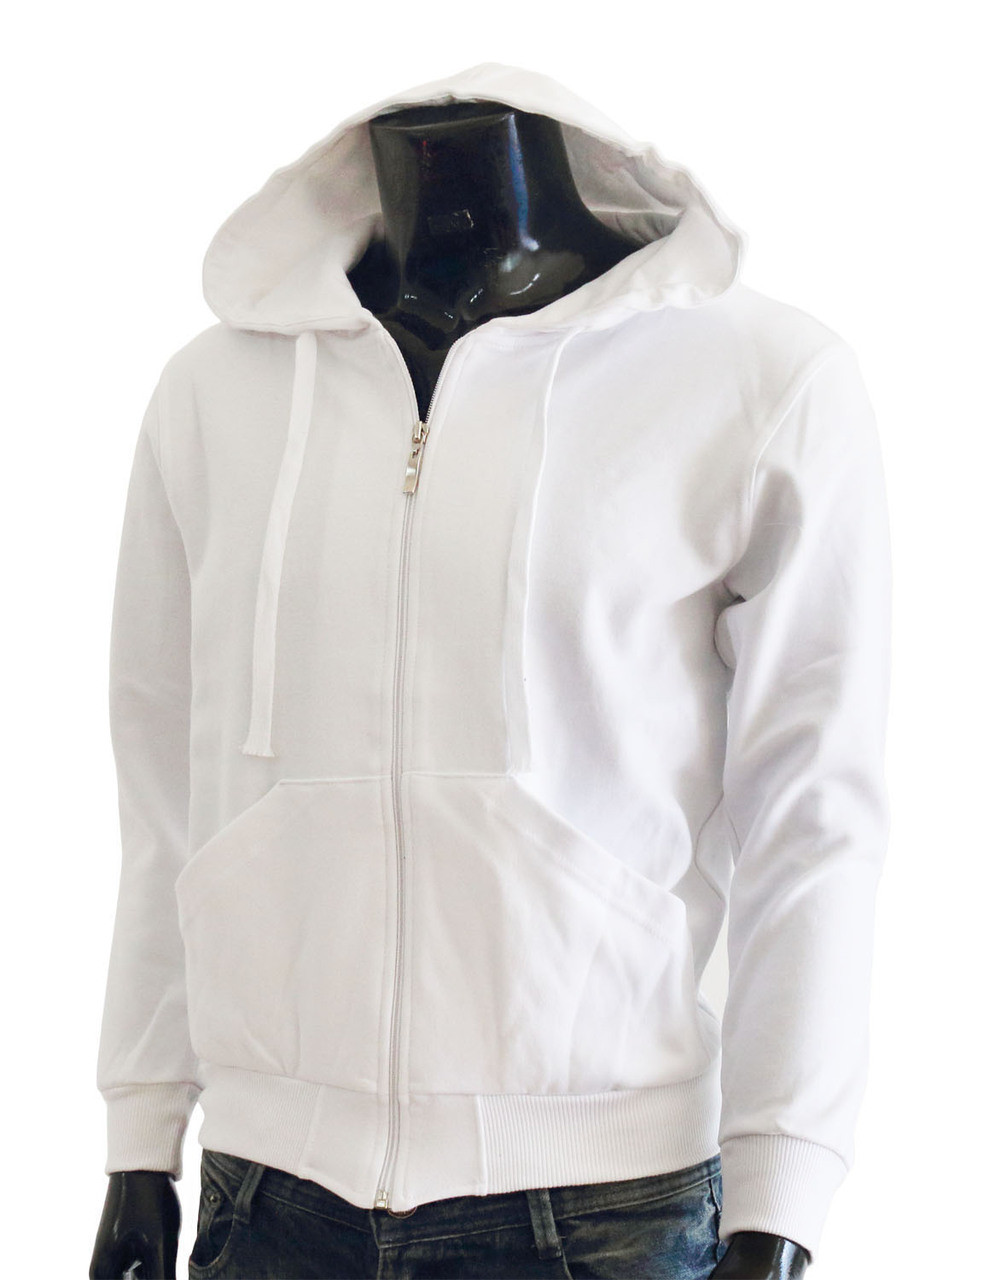 BCPOLO zipper hoodie jumper Zip-Hoodie, Solid Cotton Zip-up hoodie  jacket-Blue